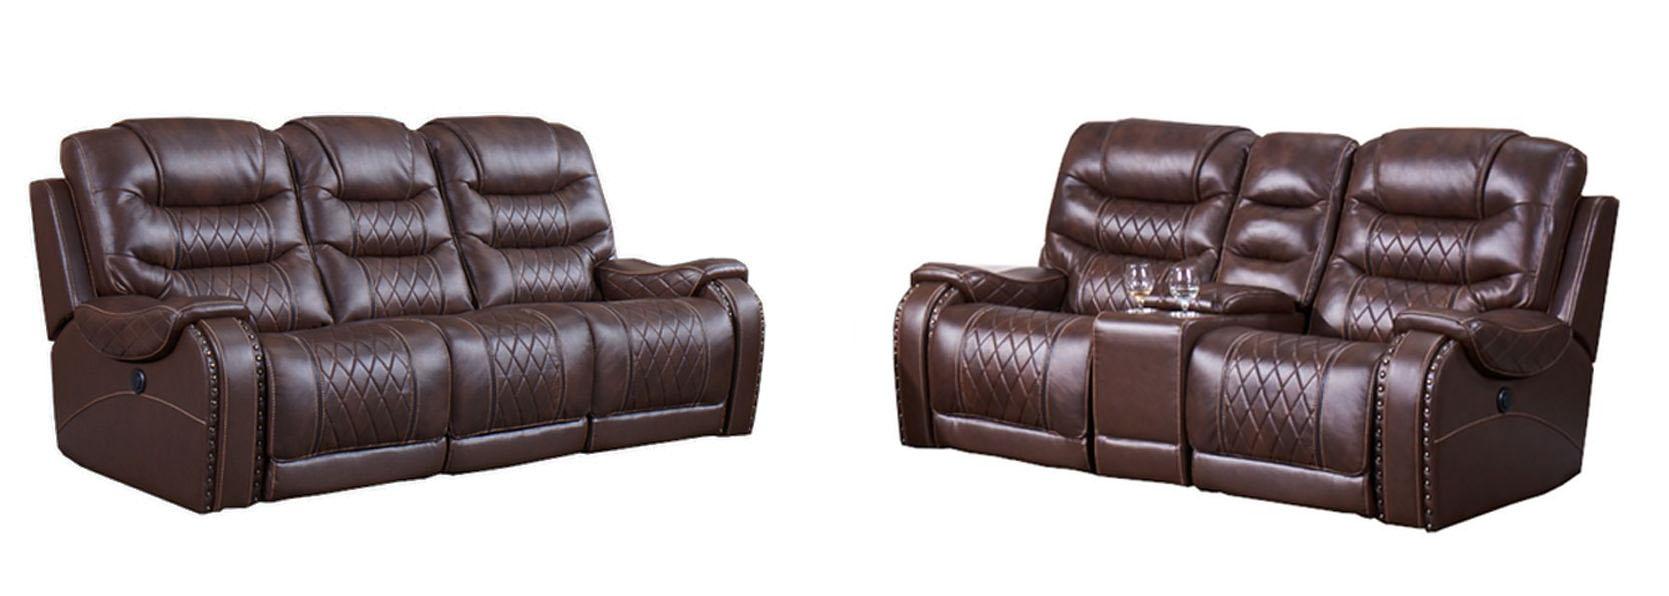 McFerran Furniture SF1350 Reclining Set